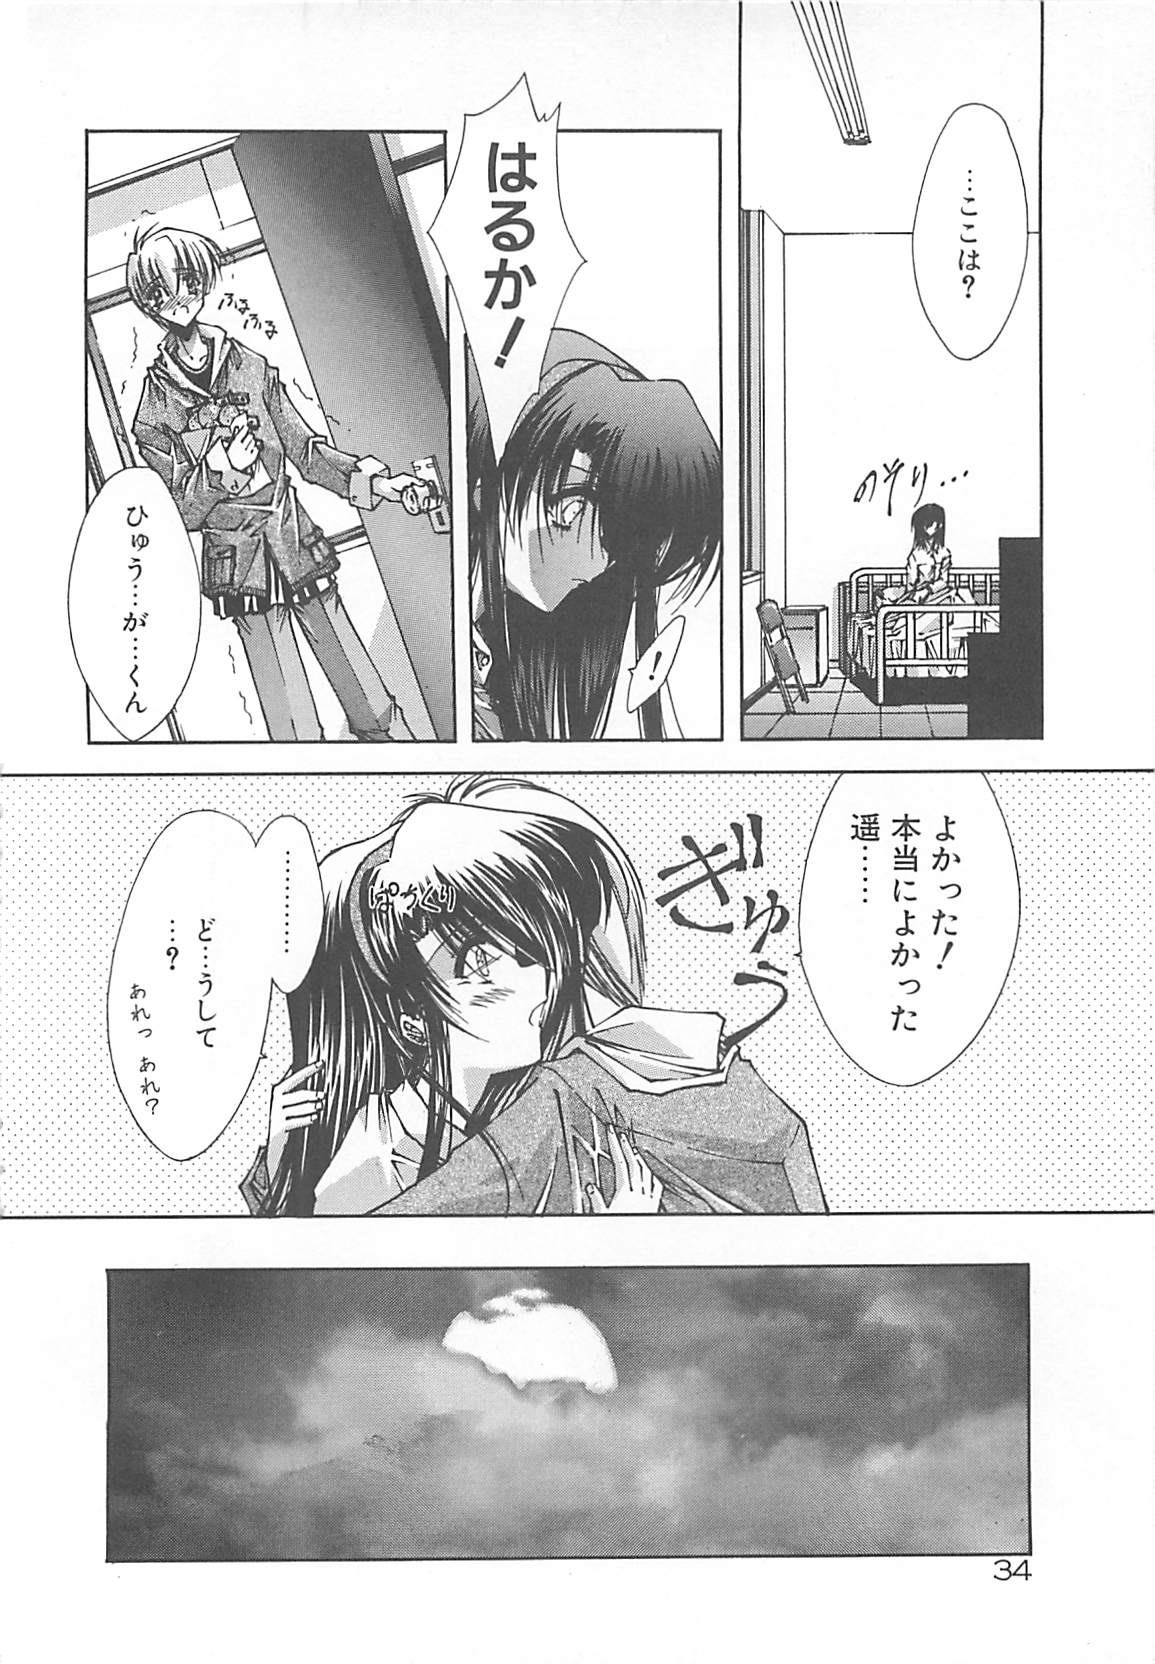 [Serizawa Katsumi] Kanon page 34 full